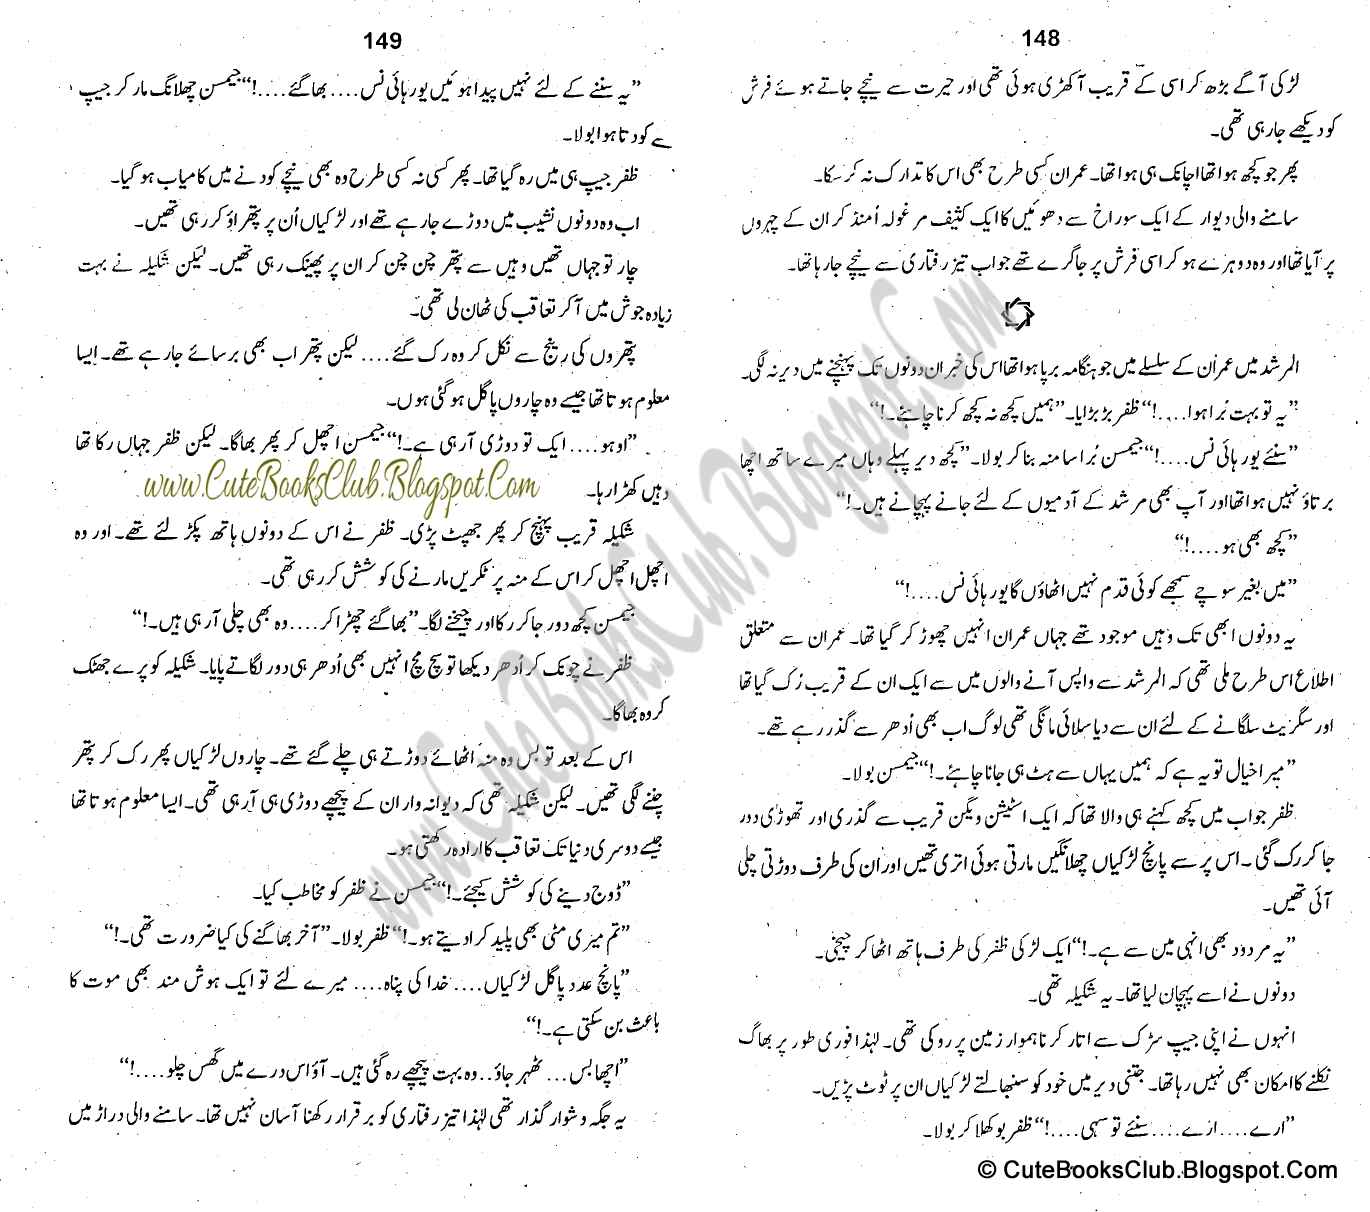 065-Phir Wahi Awaaz, Imran Series By Ibne Safi (Urdu Novel)